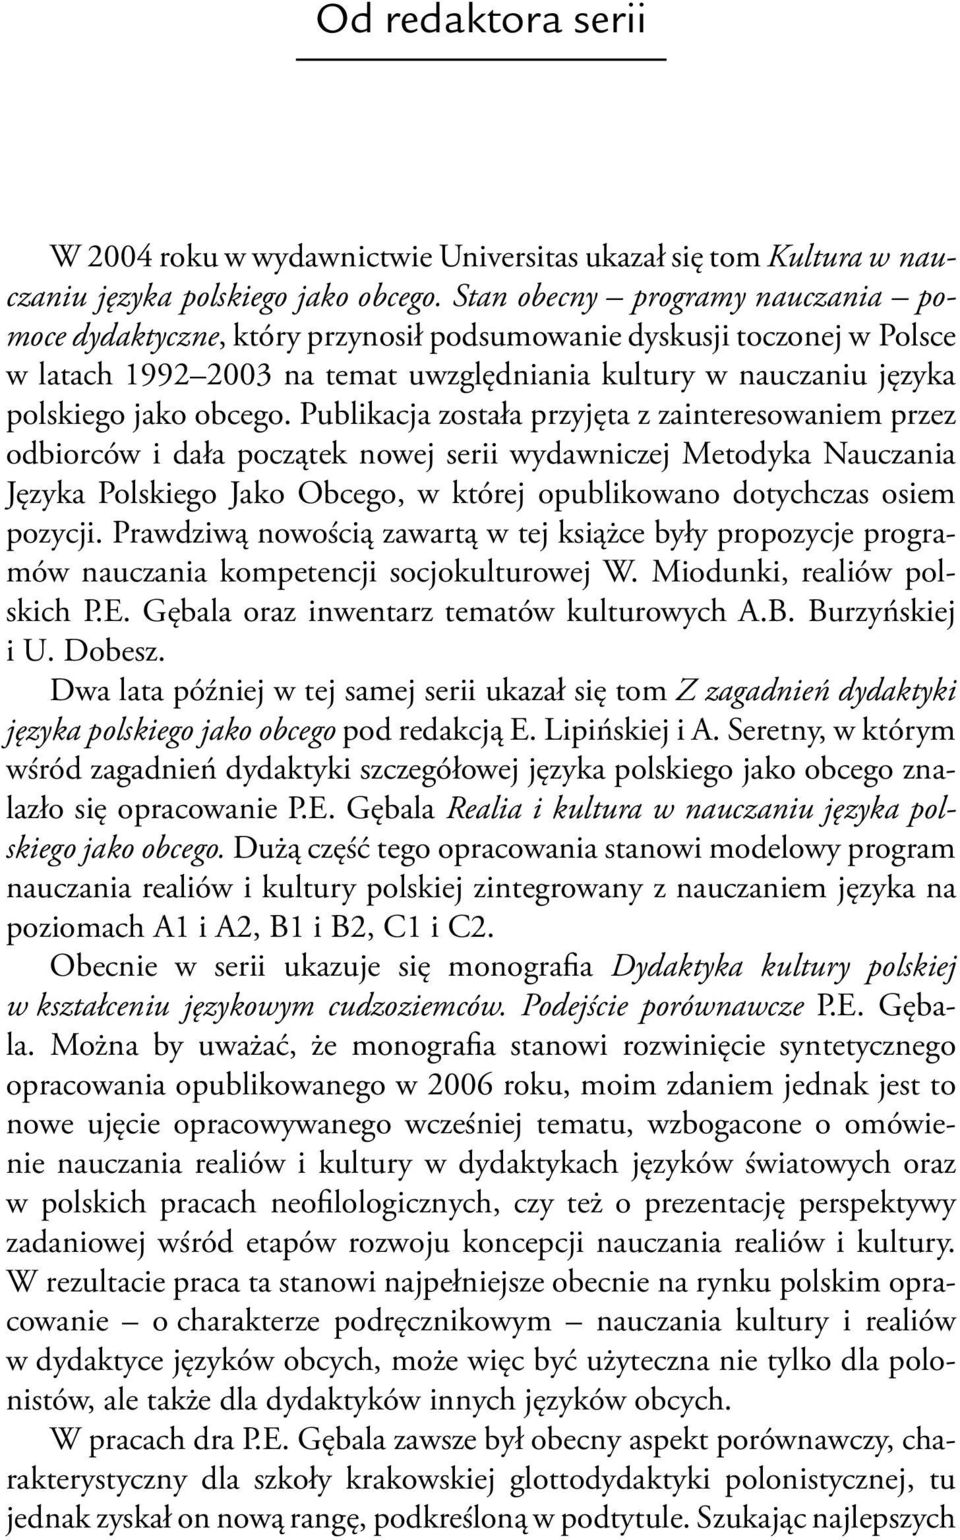 Publikacja została przyjęta z zainteresowaniem przez odbiorców i dała początek nowej serii wydawniczej Metodyka Nauczania Języka Polskiego Jako Obcego, w której opublikowano dotychczas osiem pozycji.